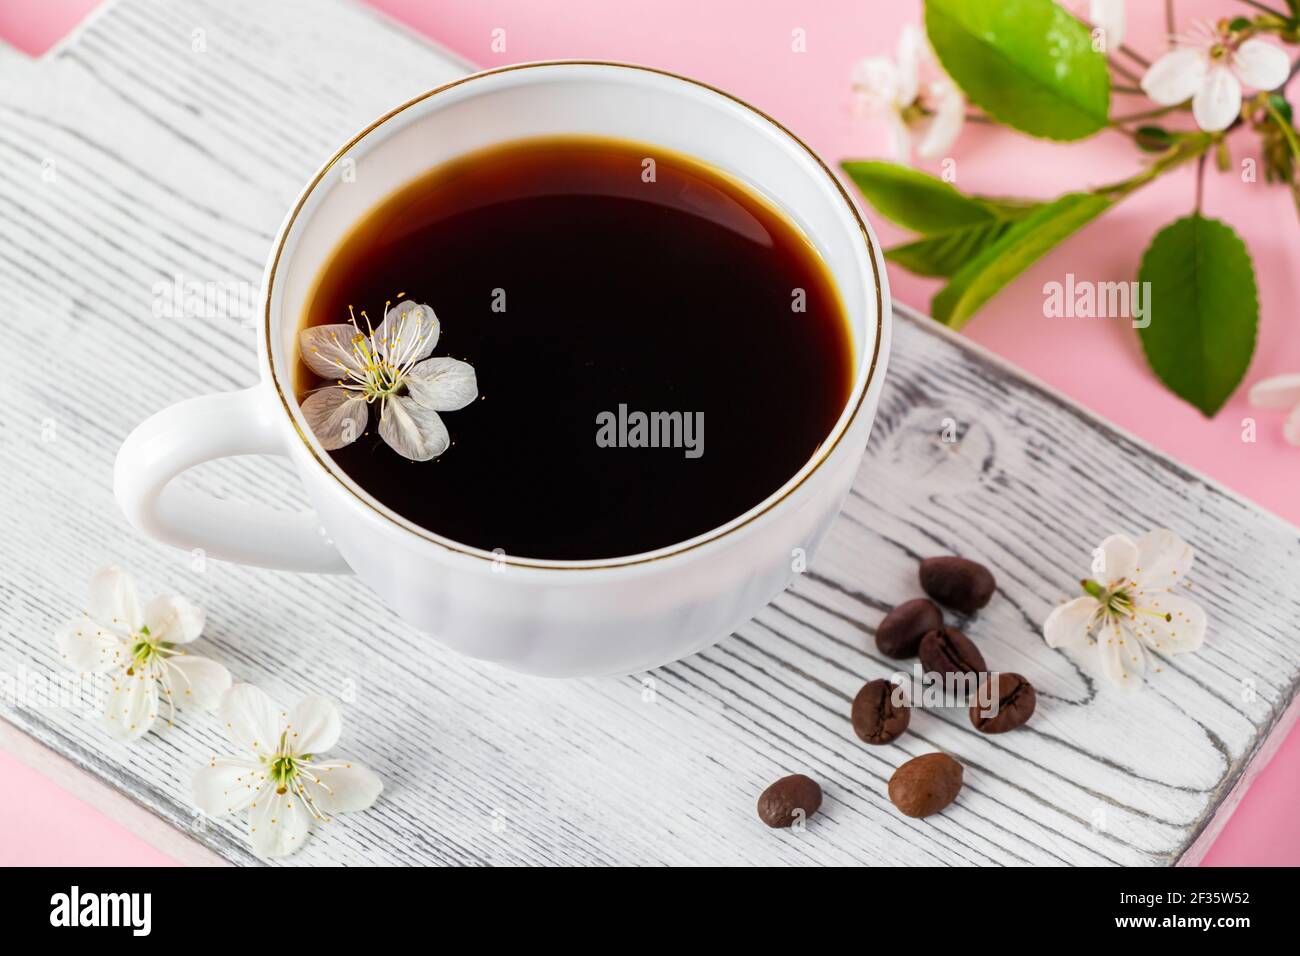 Tazza di caffè espresso forte e delicati fiori primaverili su sfondo rosa. Concetto di primavera e buon mattino. Foto Stock